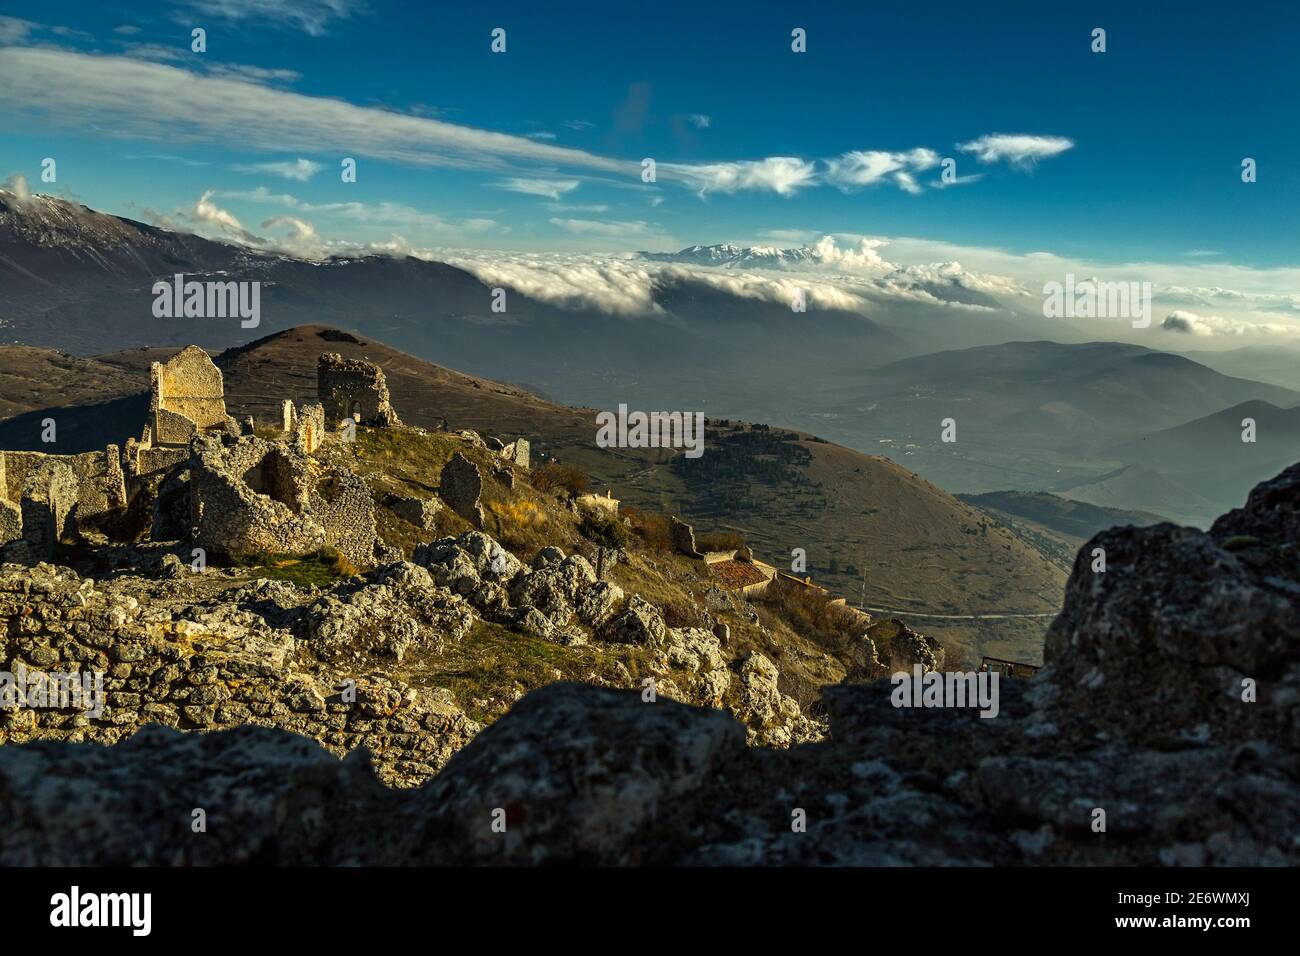 Die schneebedeckten Gipfel des Maiella-Gebirges von den Ruinen des alten Dorfes Rocca Calascio aus gesehen. Abruzzen, Italien Stockfoto